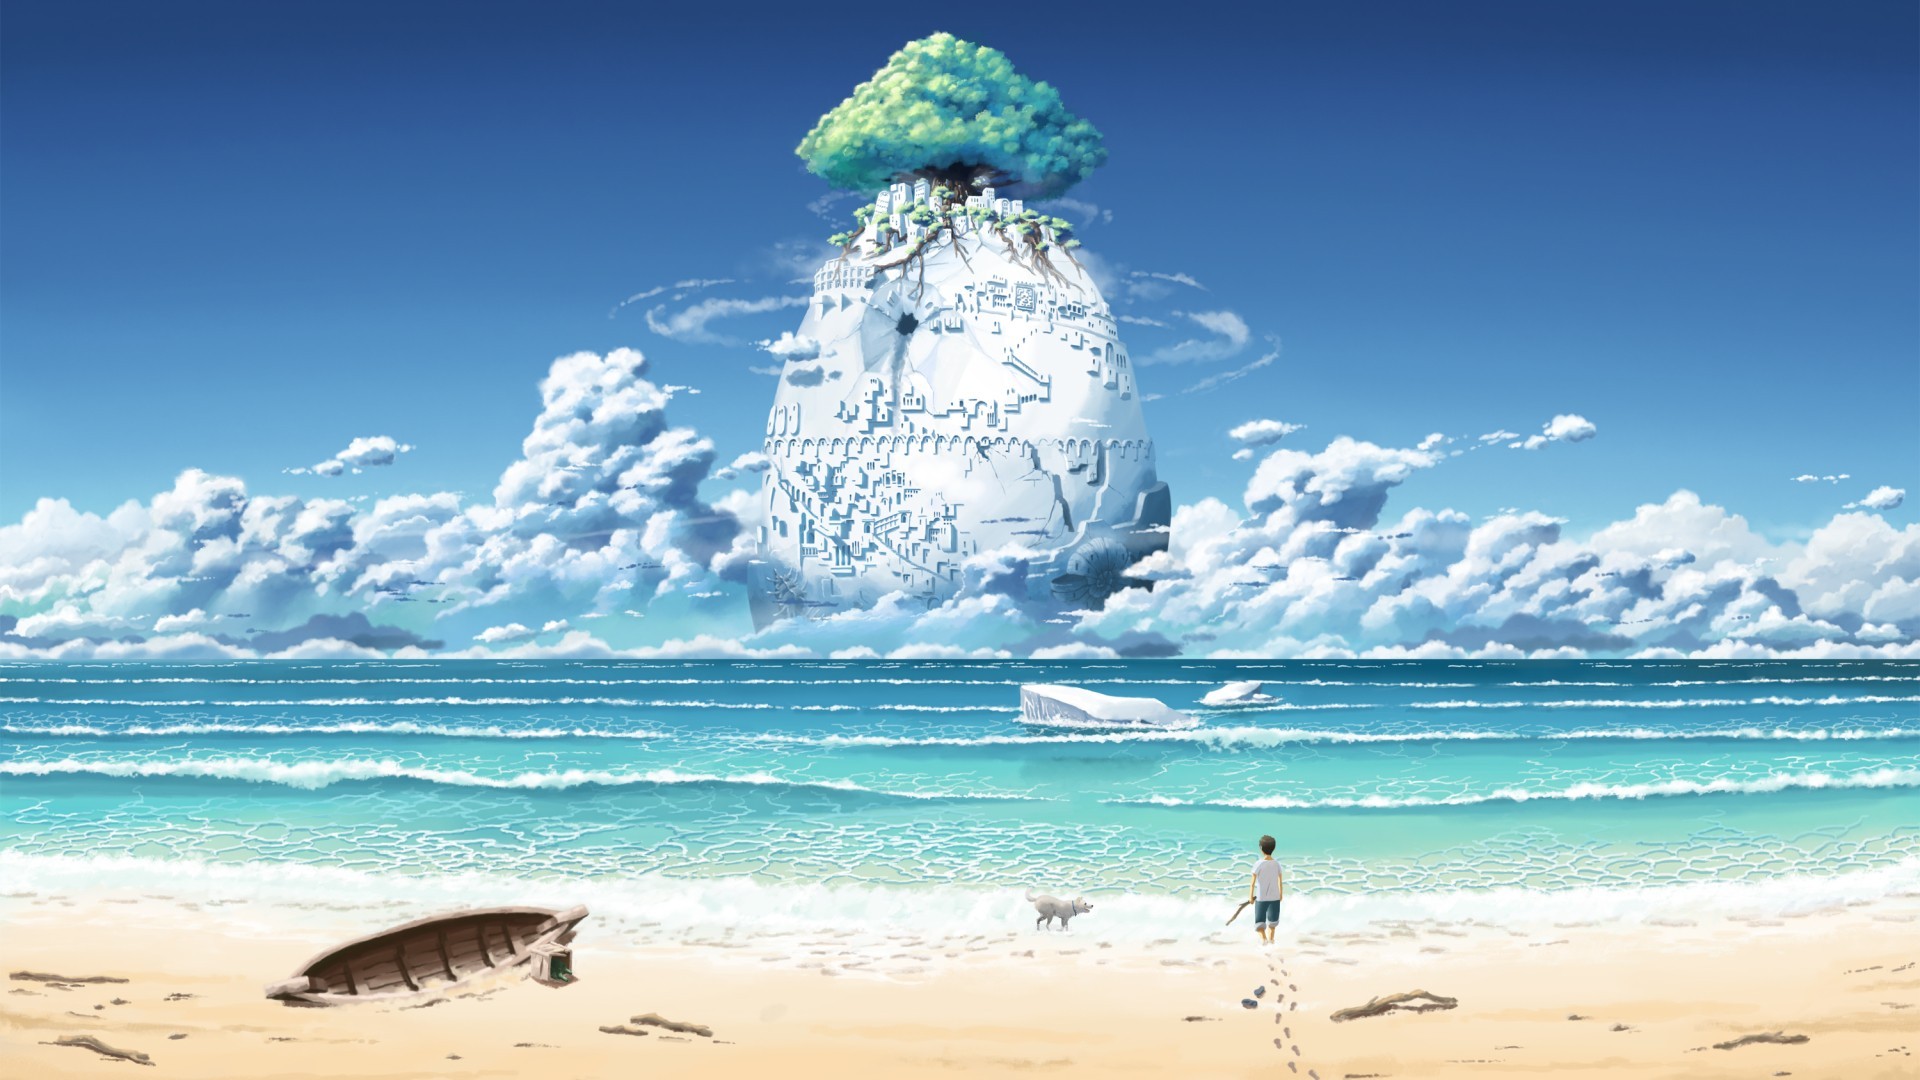 Anime Beach wallpaper for desktop